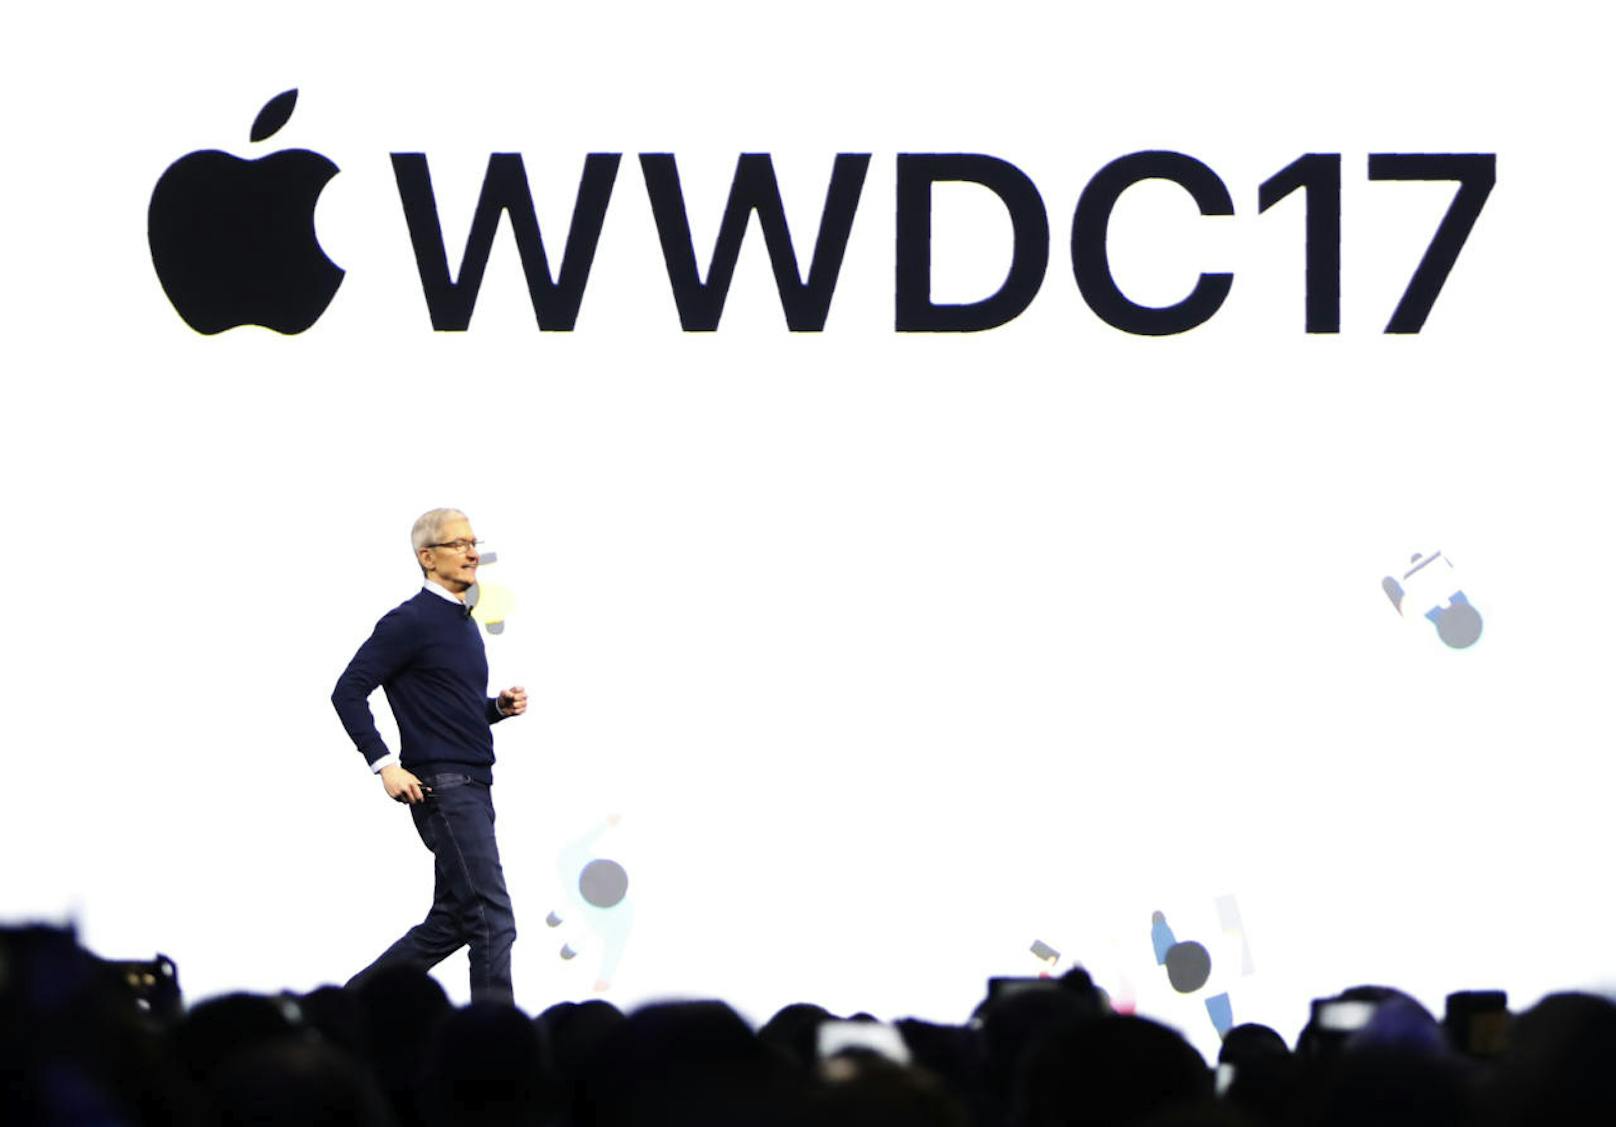 Klicken Sie sich durch die Neuigkeiten der Apple WWDC 17!